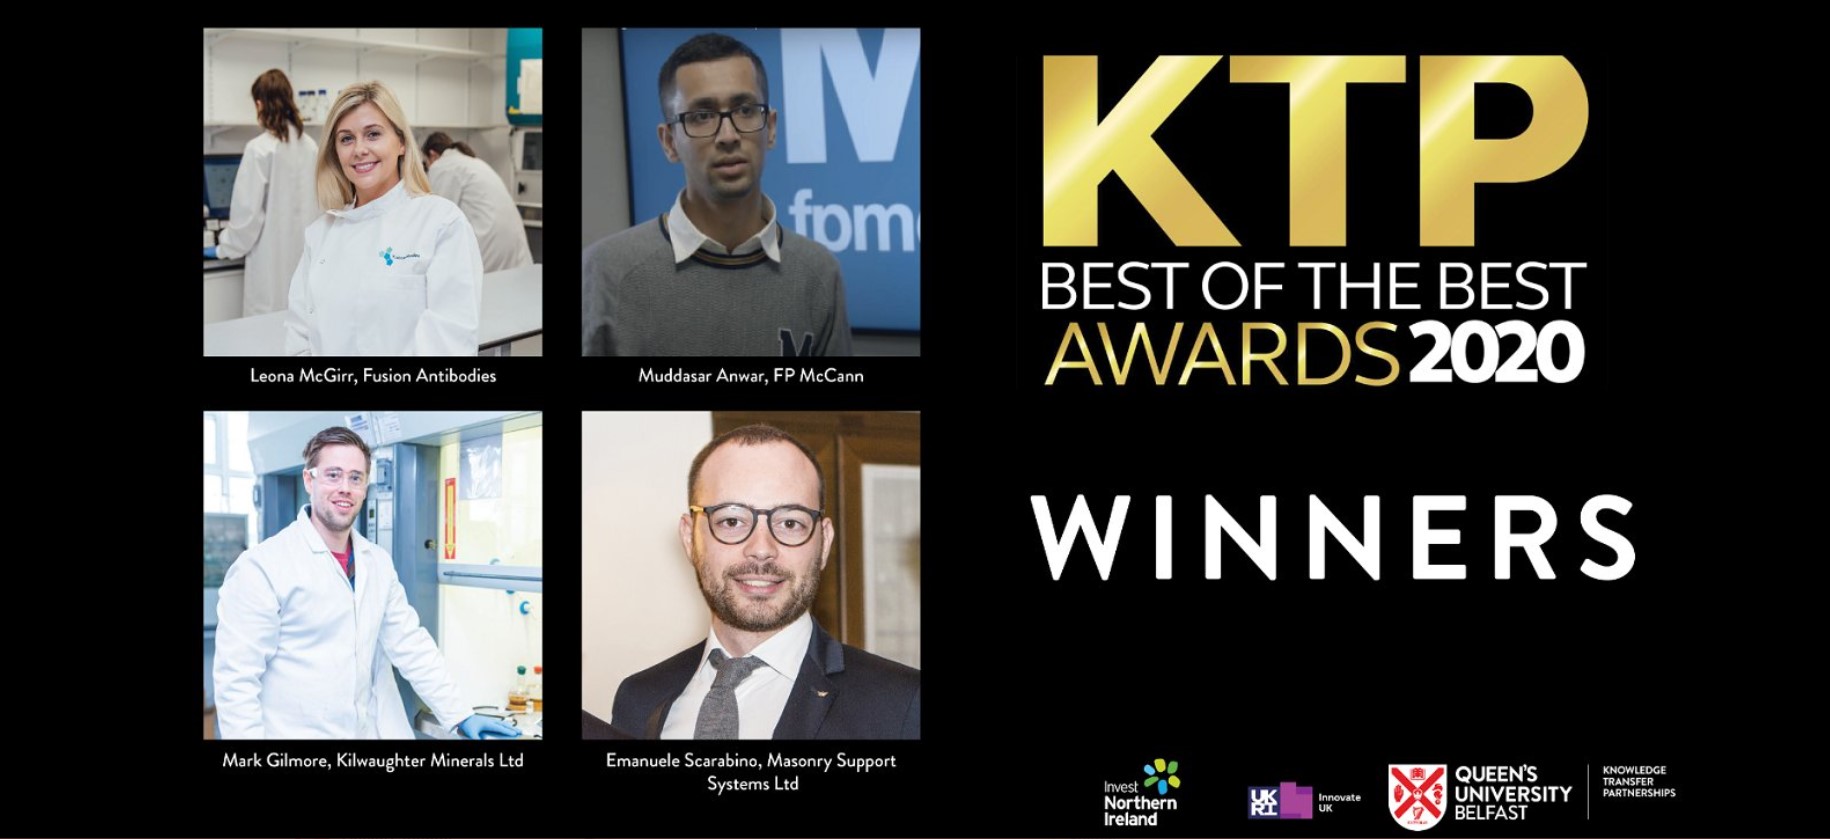 Queen's KTP Best of the Best Awards winners 2020 